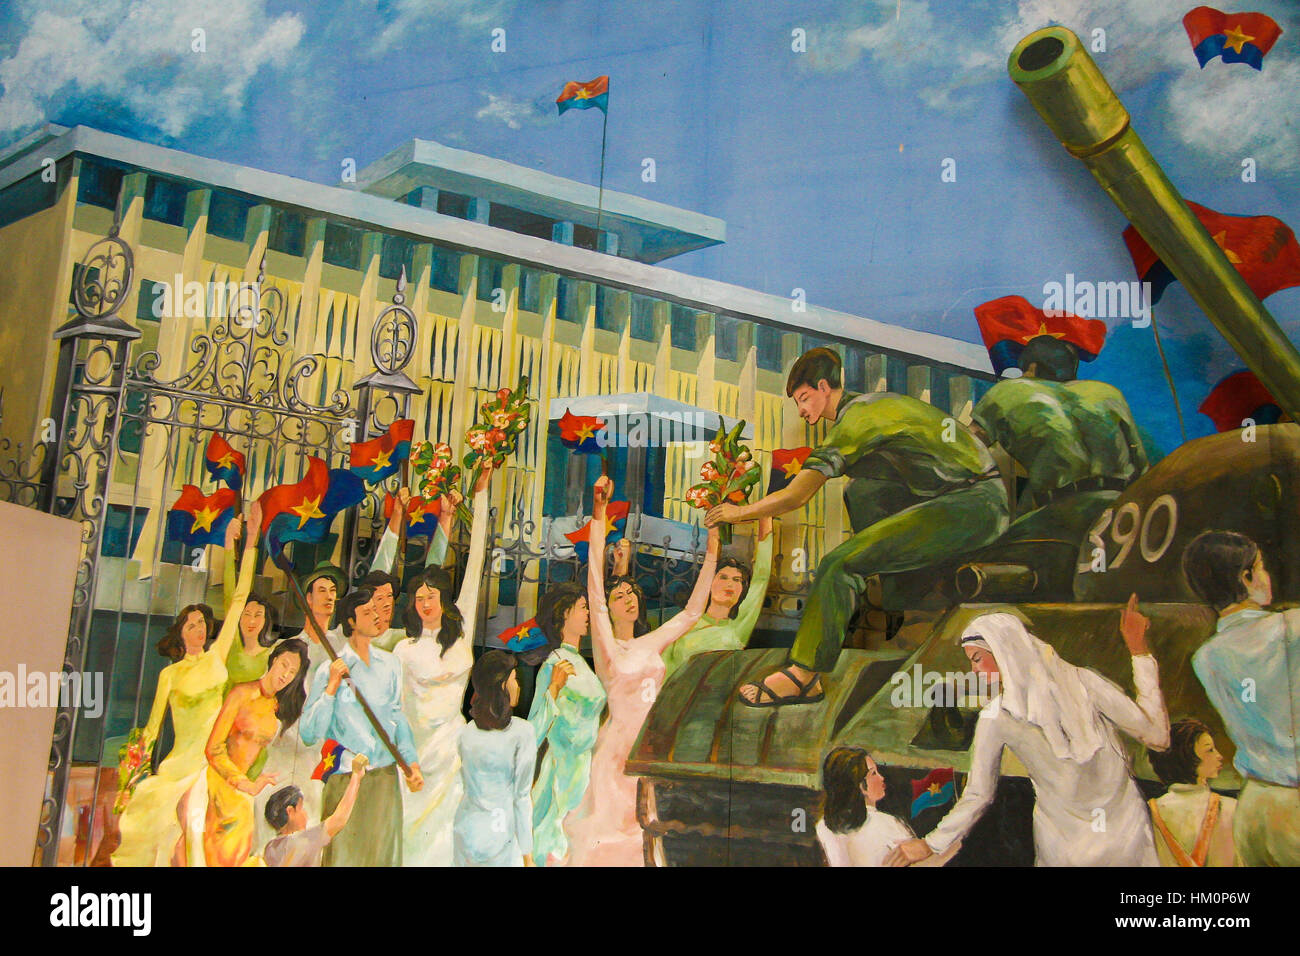 La peinture dans le Palais de l'indépendance à Ho Chi Minh City, Vietnam, représentant la "libération" de Saigon par les Vietcongs. Banque D'Images